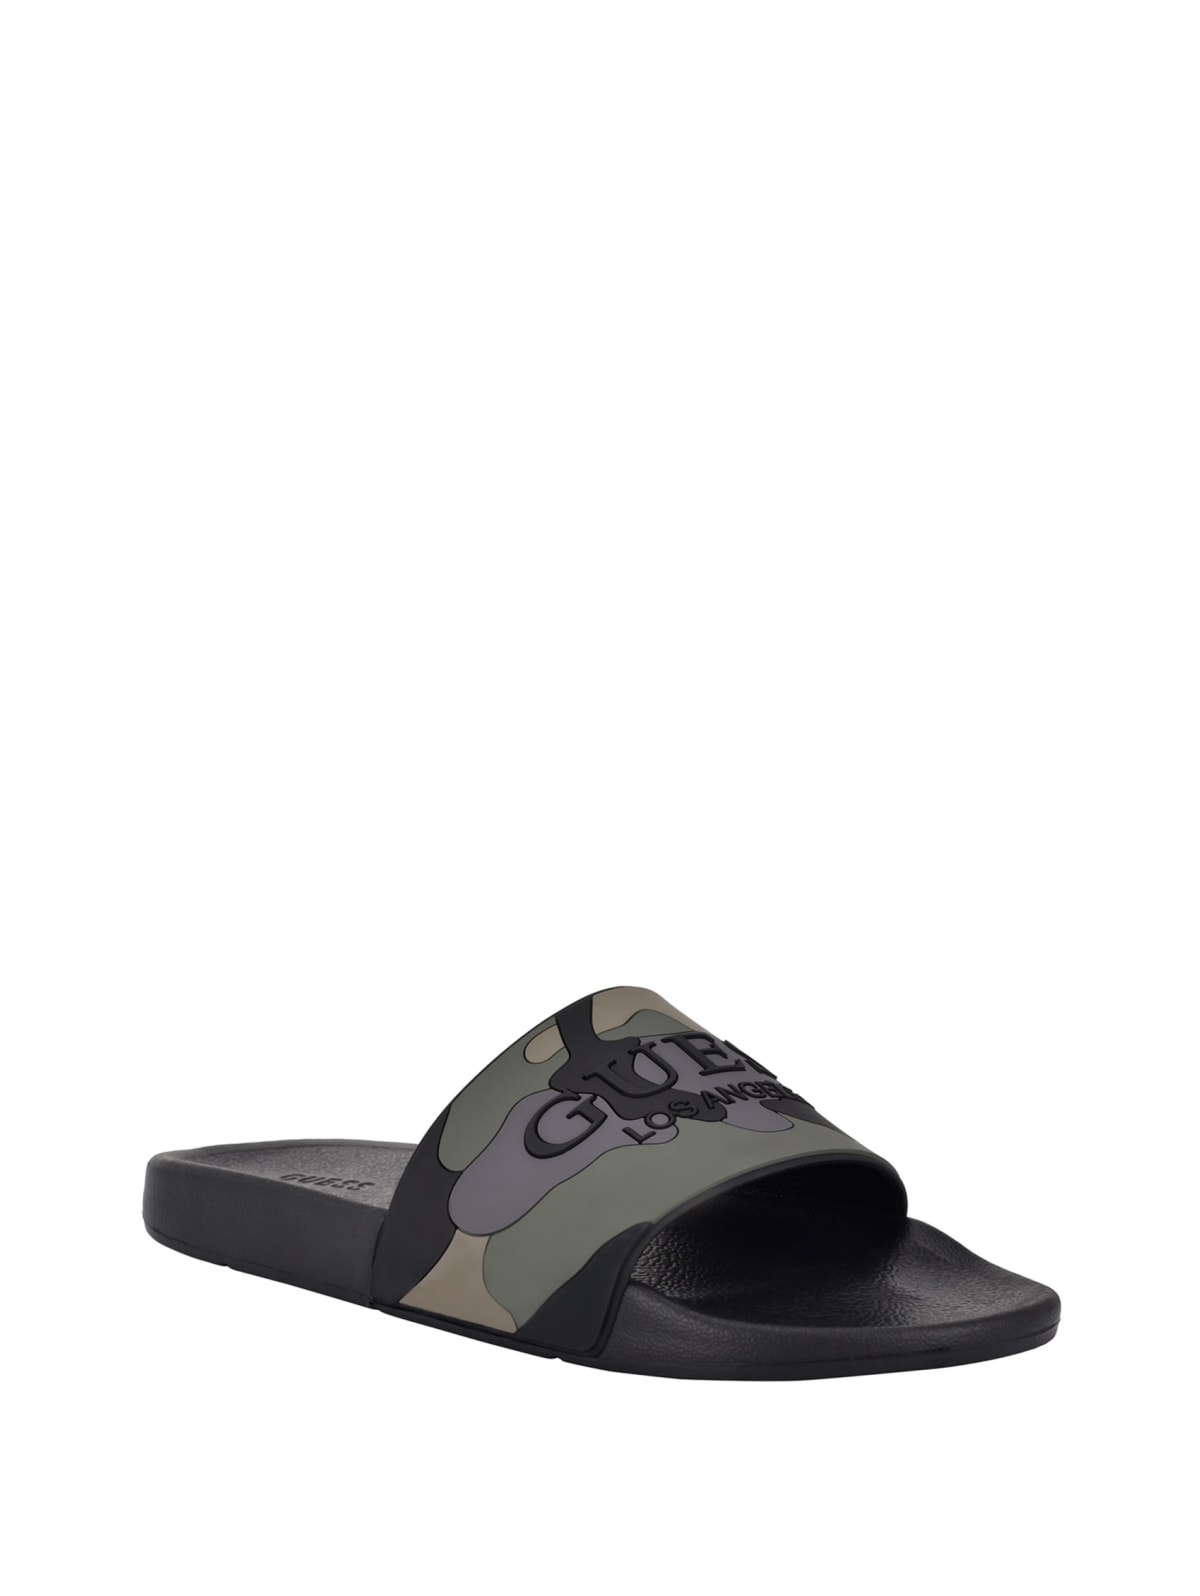 camouflage slide sandals